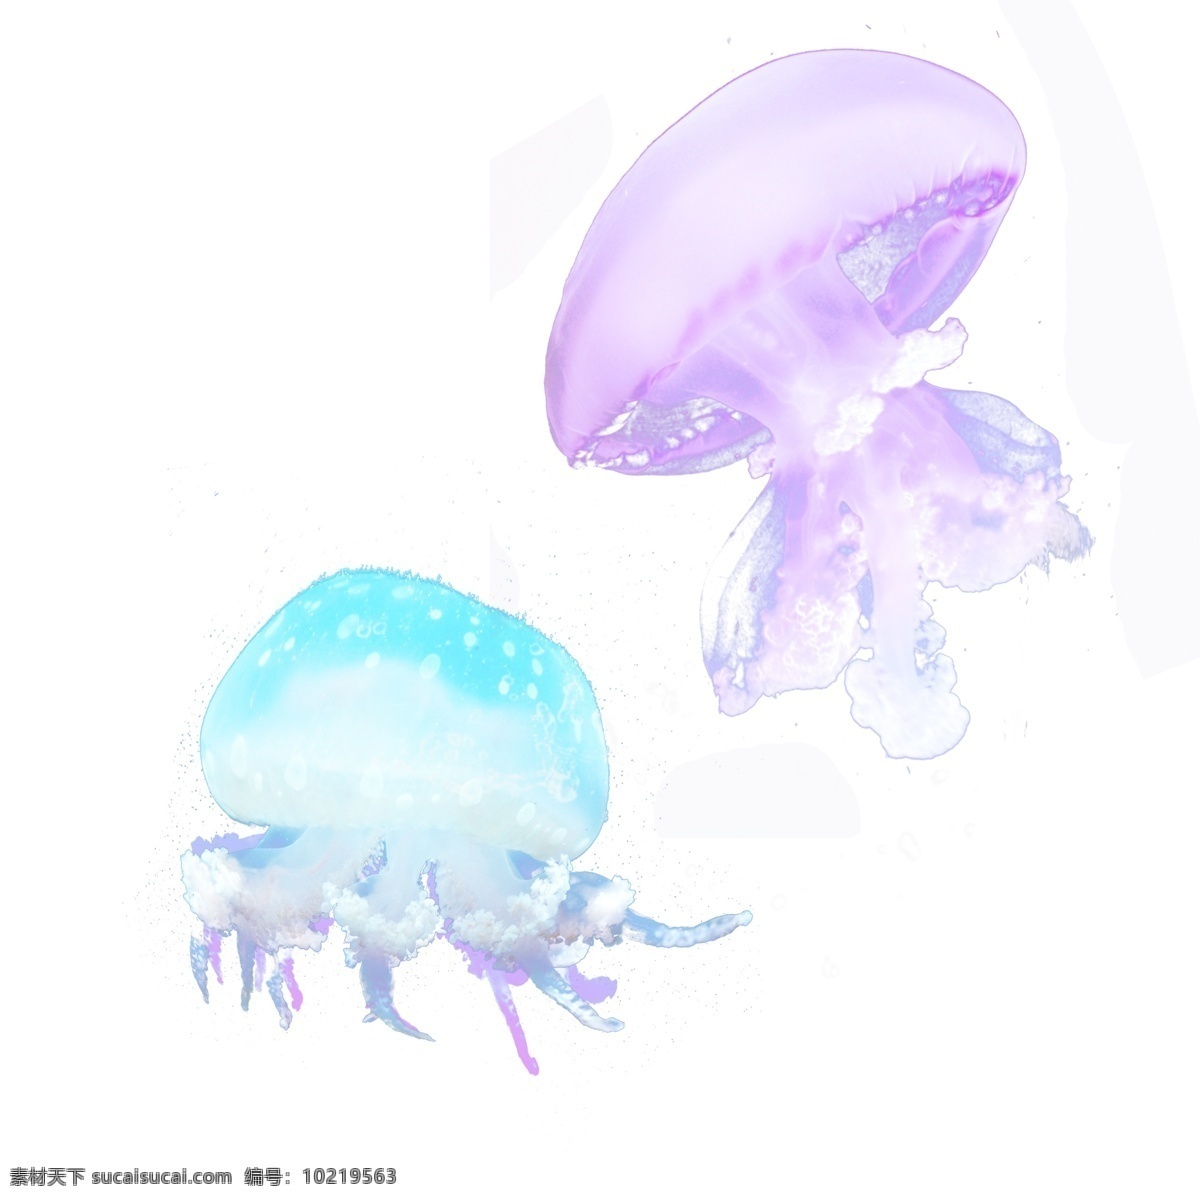 彩色 海洋生物 水母 元素 彩色水母 海底水母 浮游 浮游生物 八爪鱼 海洋水母 乌贼 章鱼 透明生物